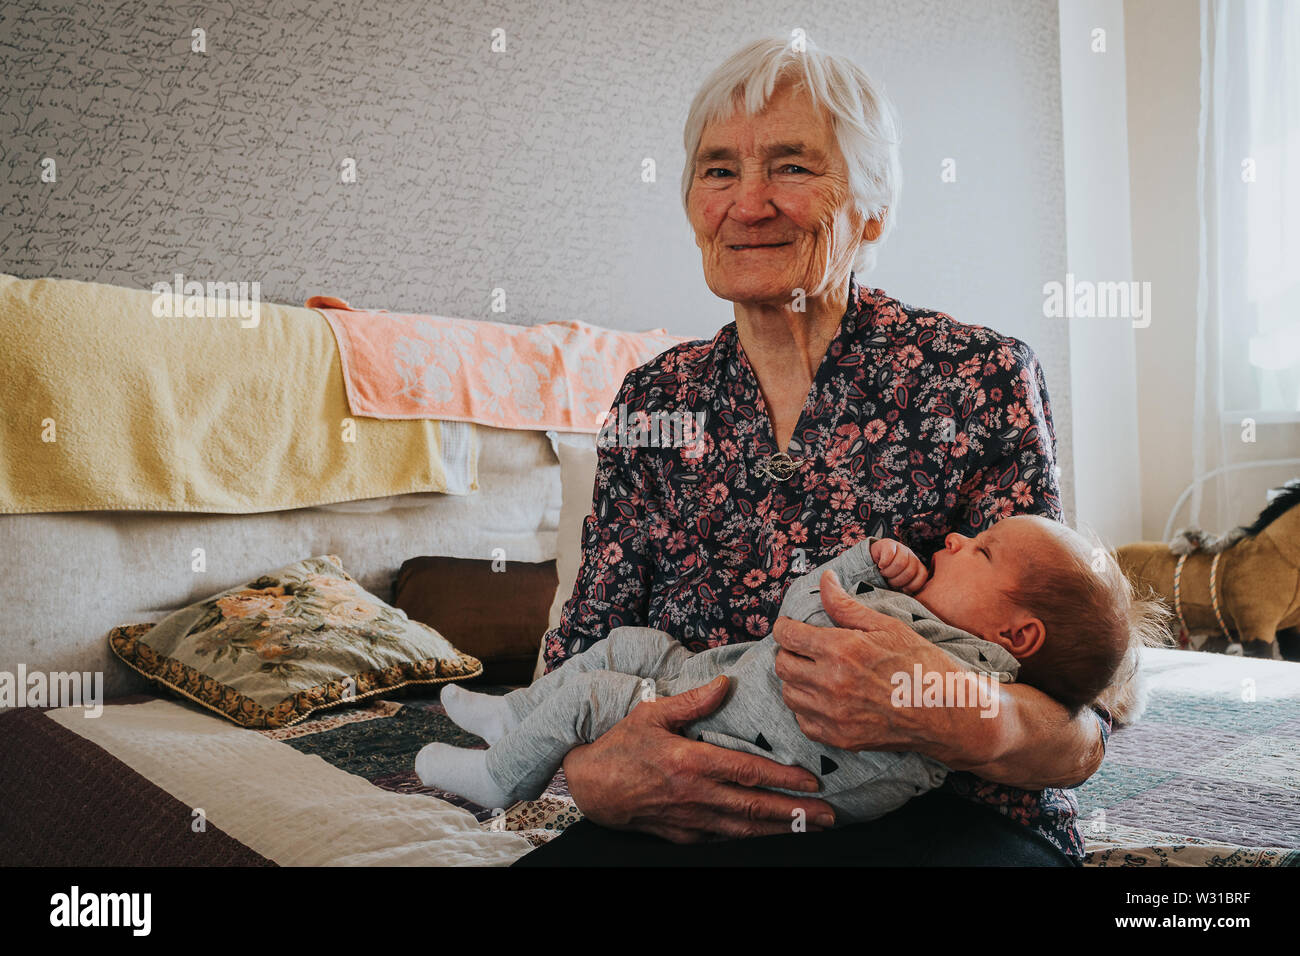 Grand-mère tient son arrière-petite-fille et ressemble à l'appareil photo Banque D'Images